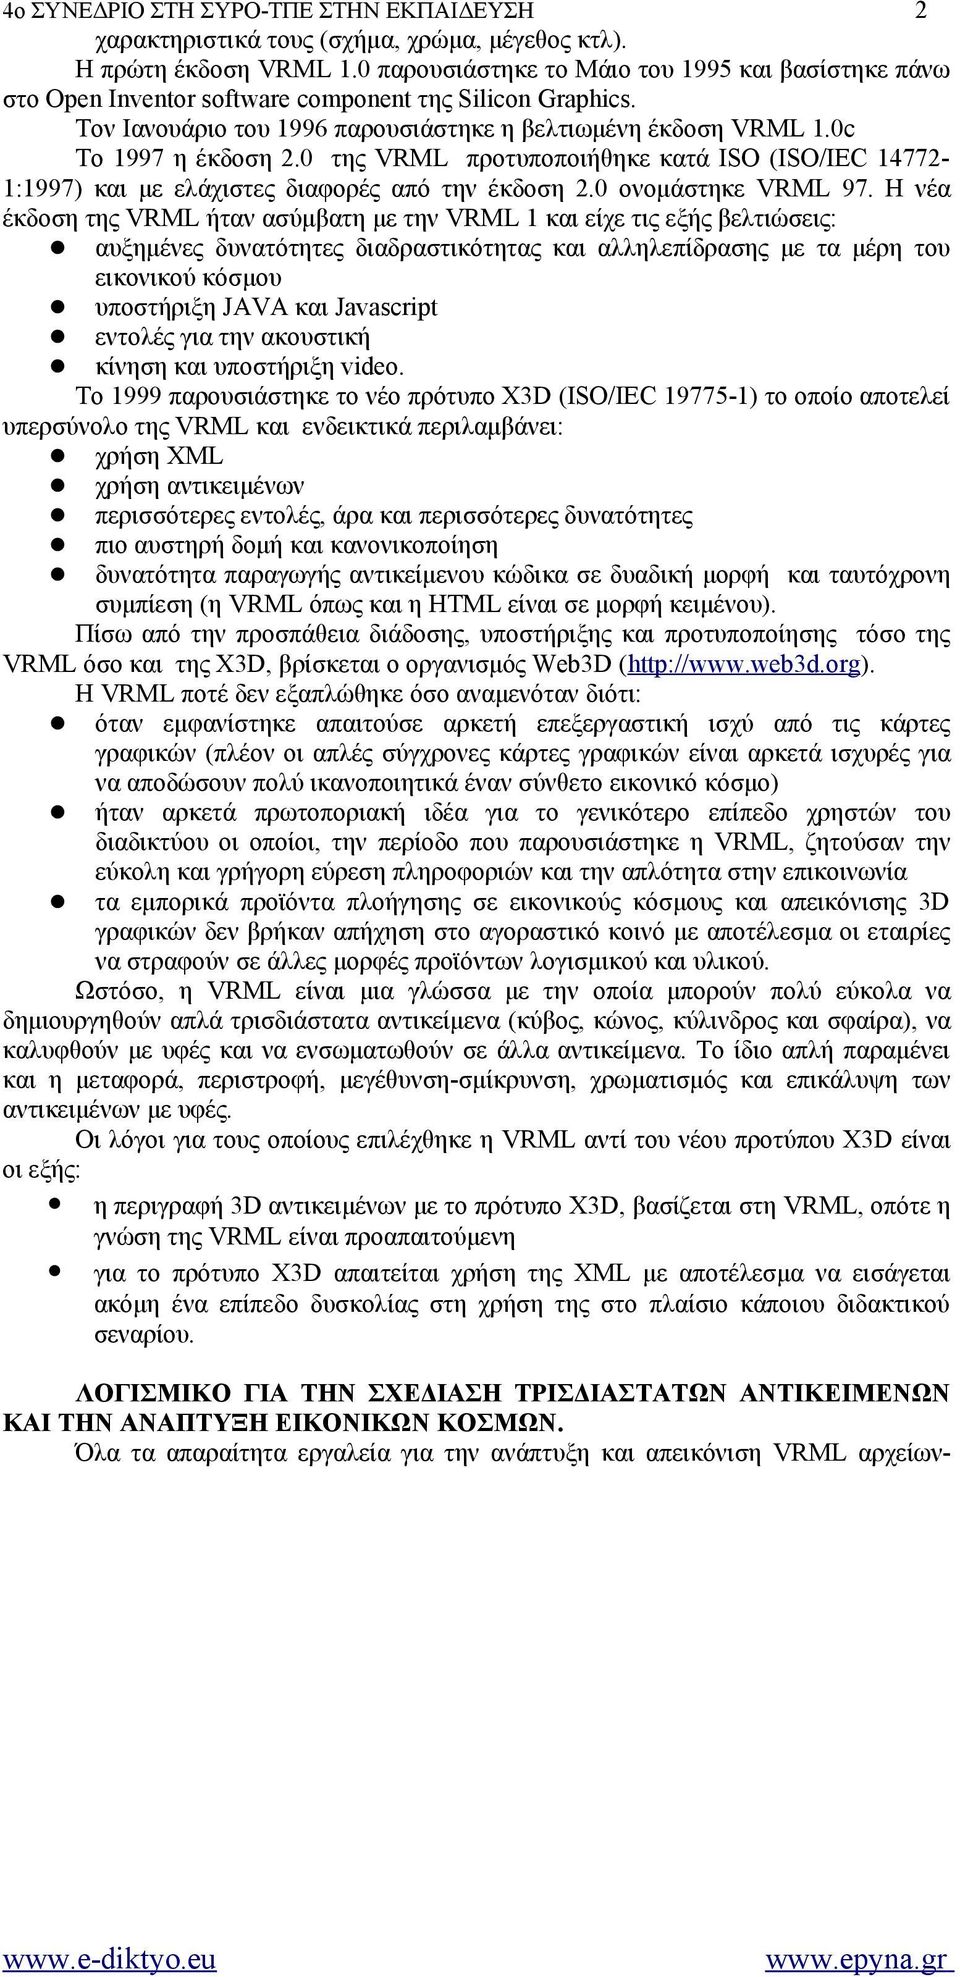 0 της VRML προτυποποιήθηκε κατά ISO (ISO/IEC 14772-1:1997) και με ελάχιστες διαφορές από την έκδοση 2.0 ονομάστηκε VRML 97.